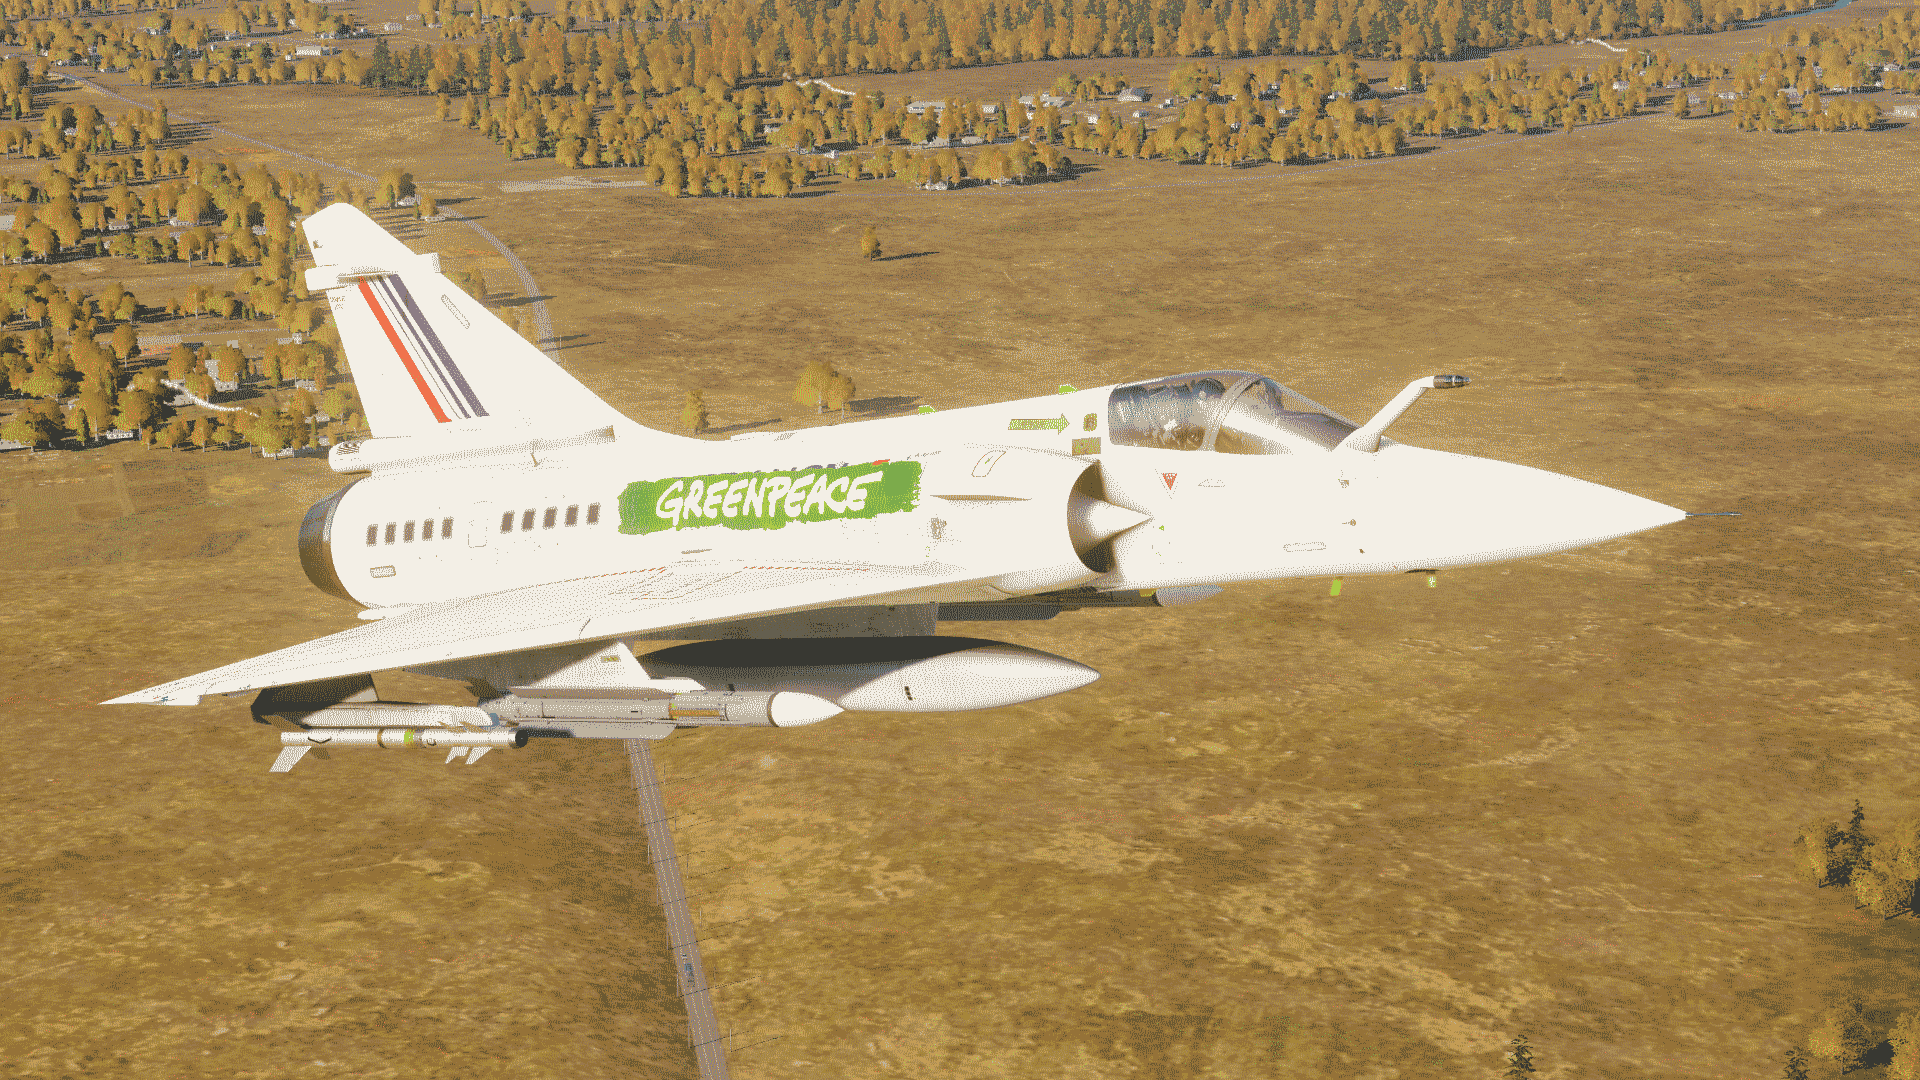 M2000C - Greenpeace